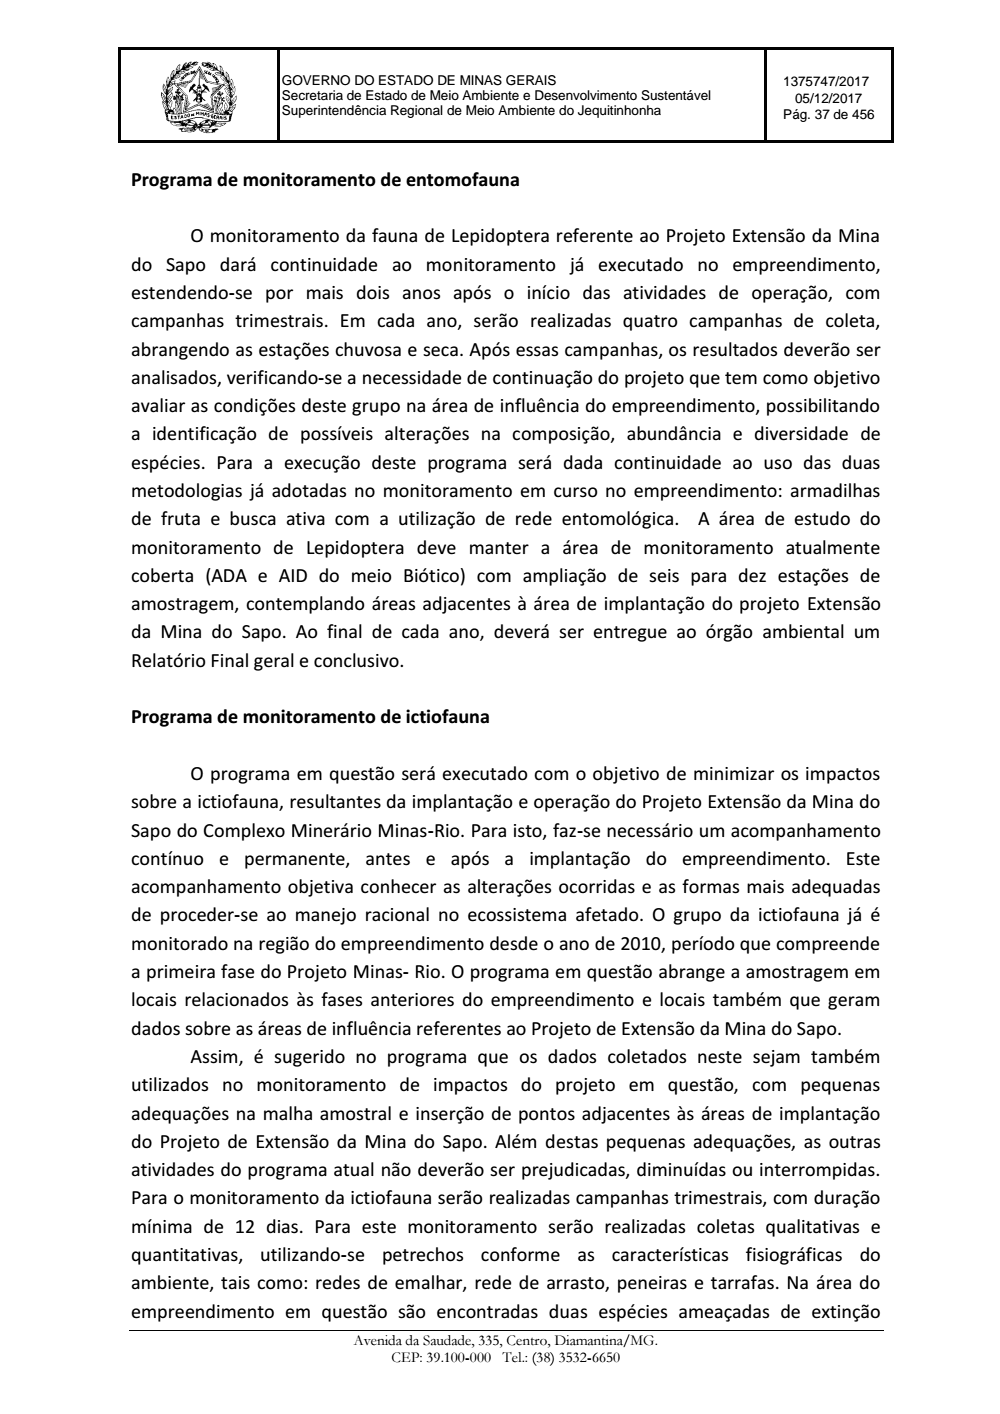 Page 37 from Parecer único da Secretaria de estado de Meio Ambiente e Desenvolvimento Sustentável (SEMAD)